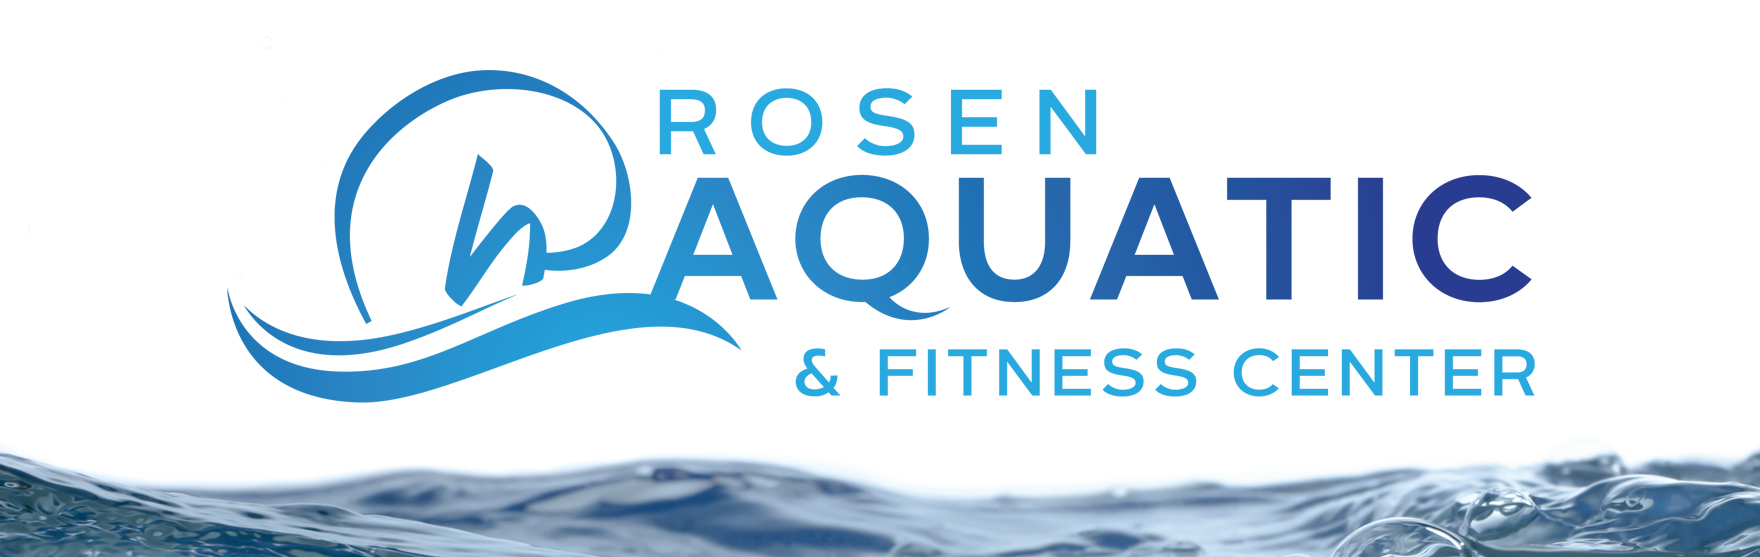 The Rosen Aquatic & Fitness Center - Rosen Gives Back